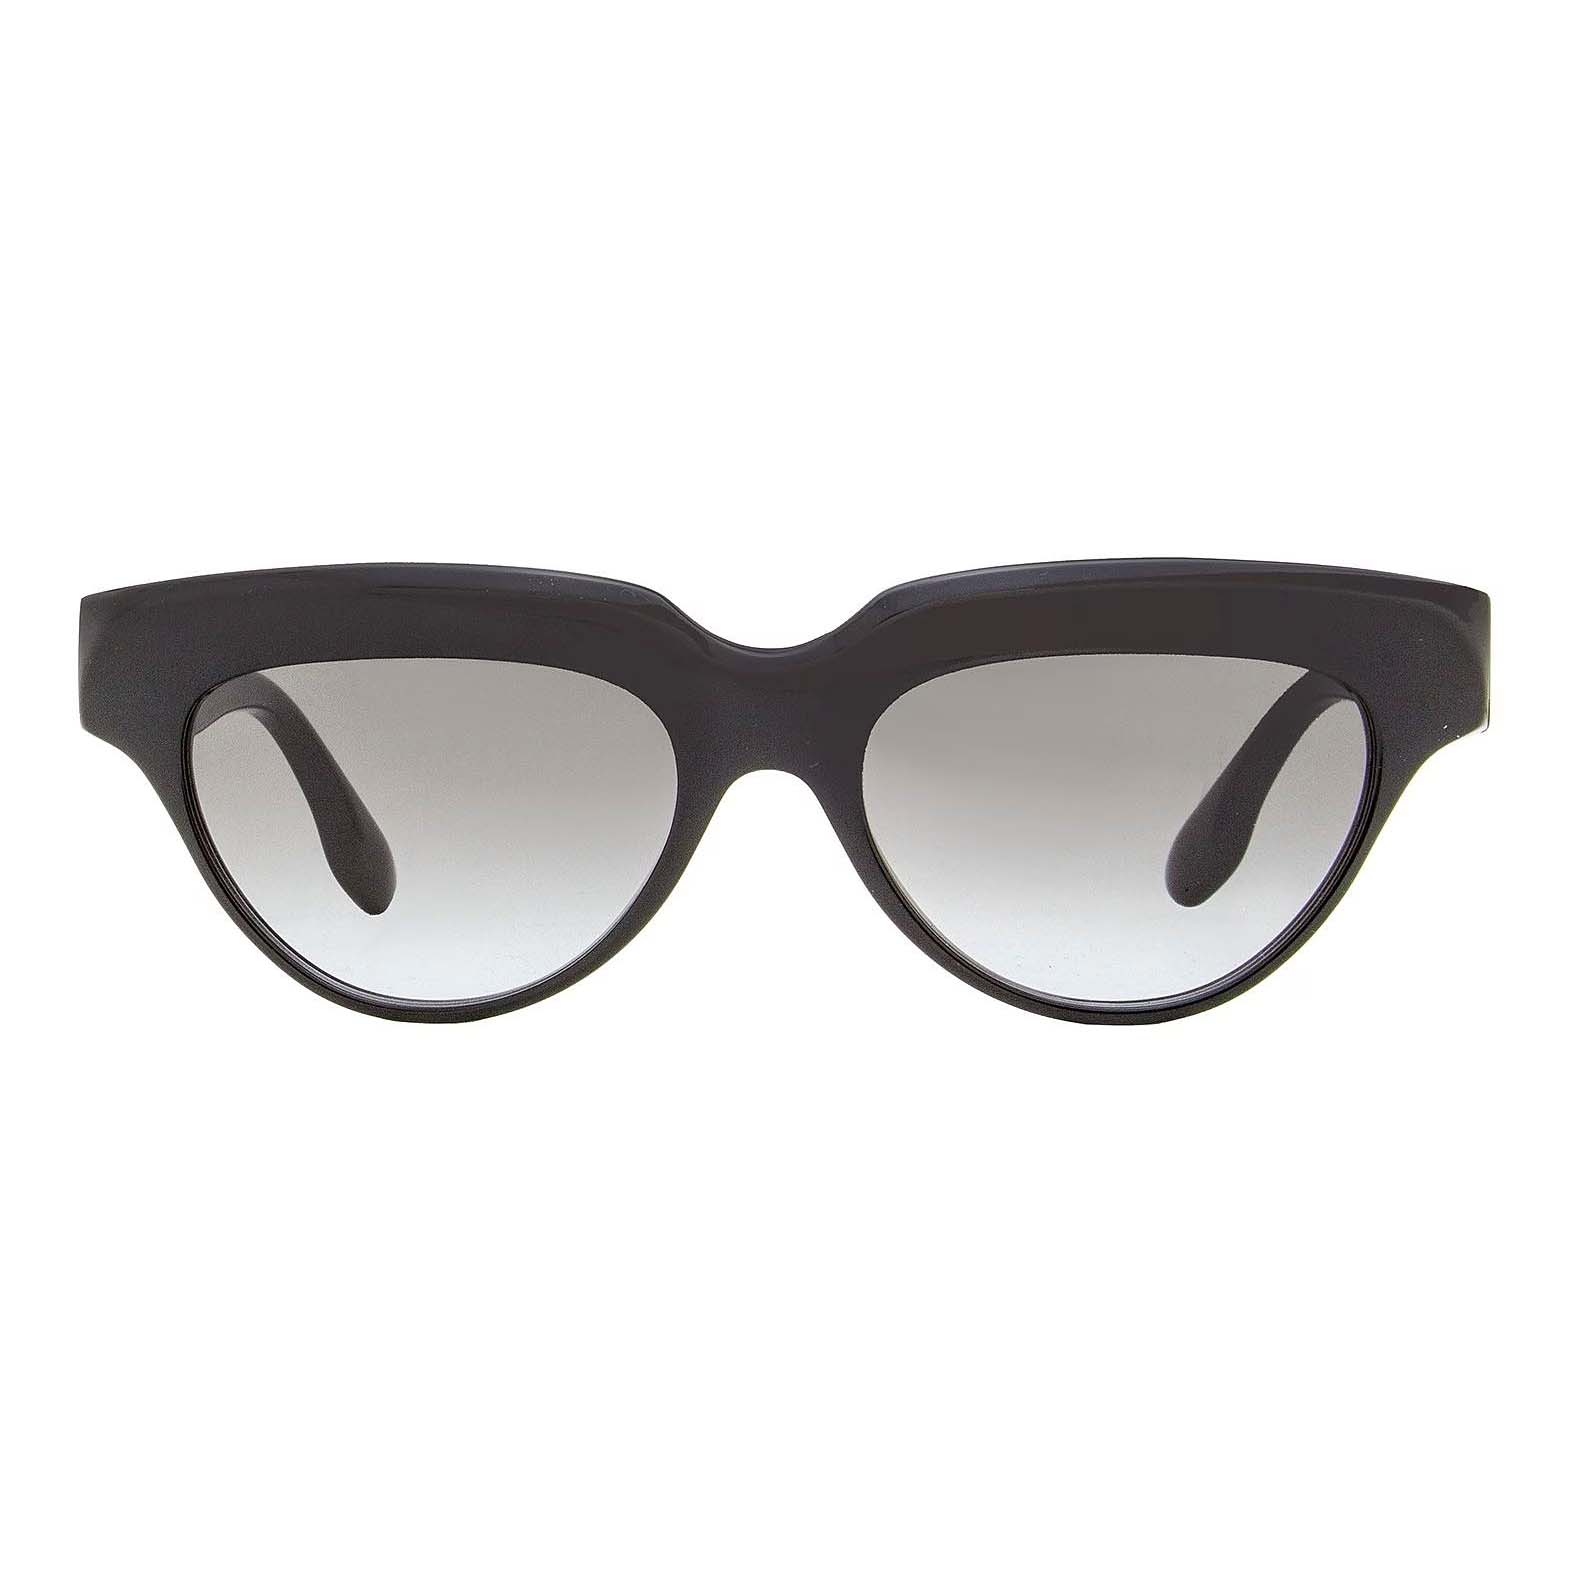 Солнцезащитные очки Victoria Beckham Cateye VB602S, черный солнцезащитные очки david beckham кошачий глаз оправа металл градиентные для мужчин золотой